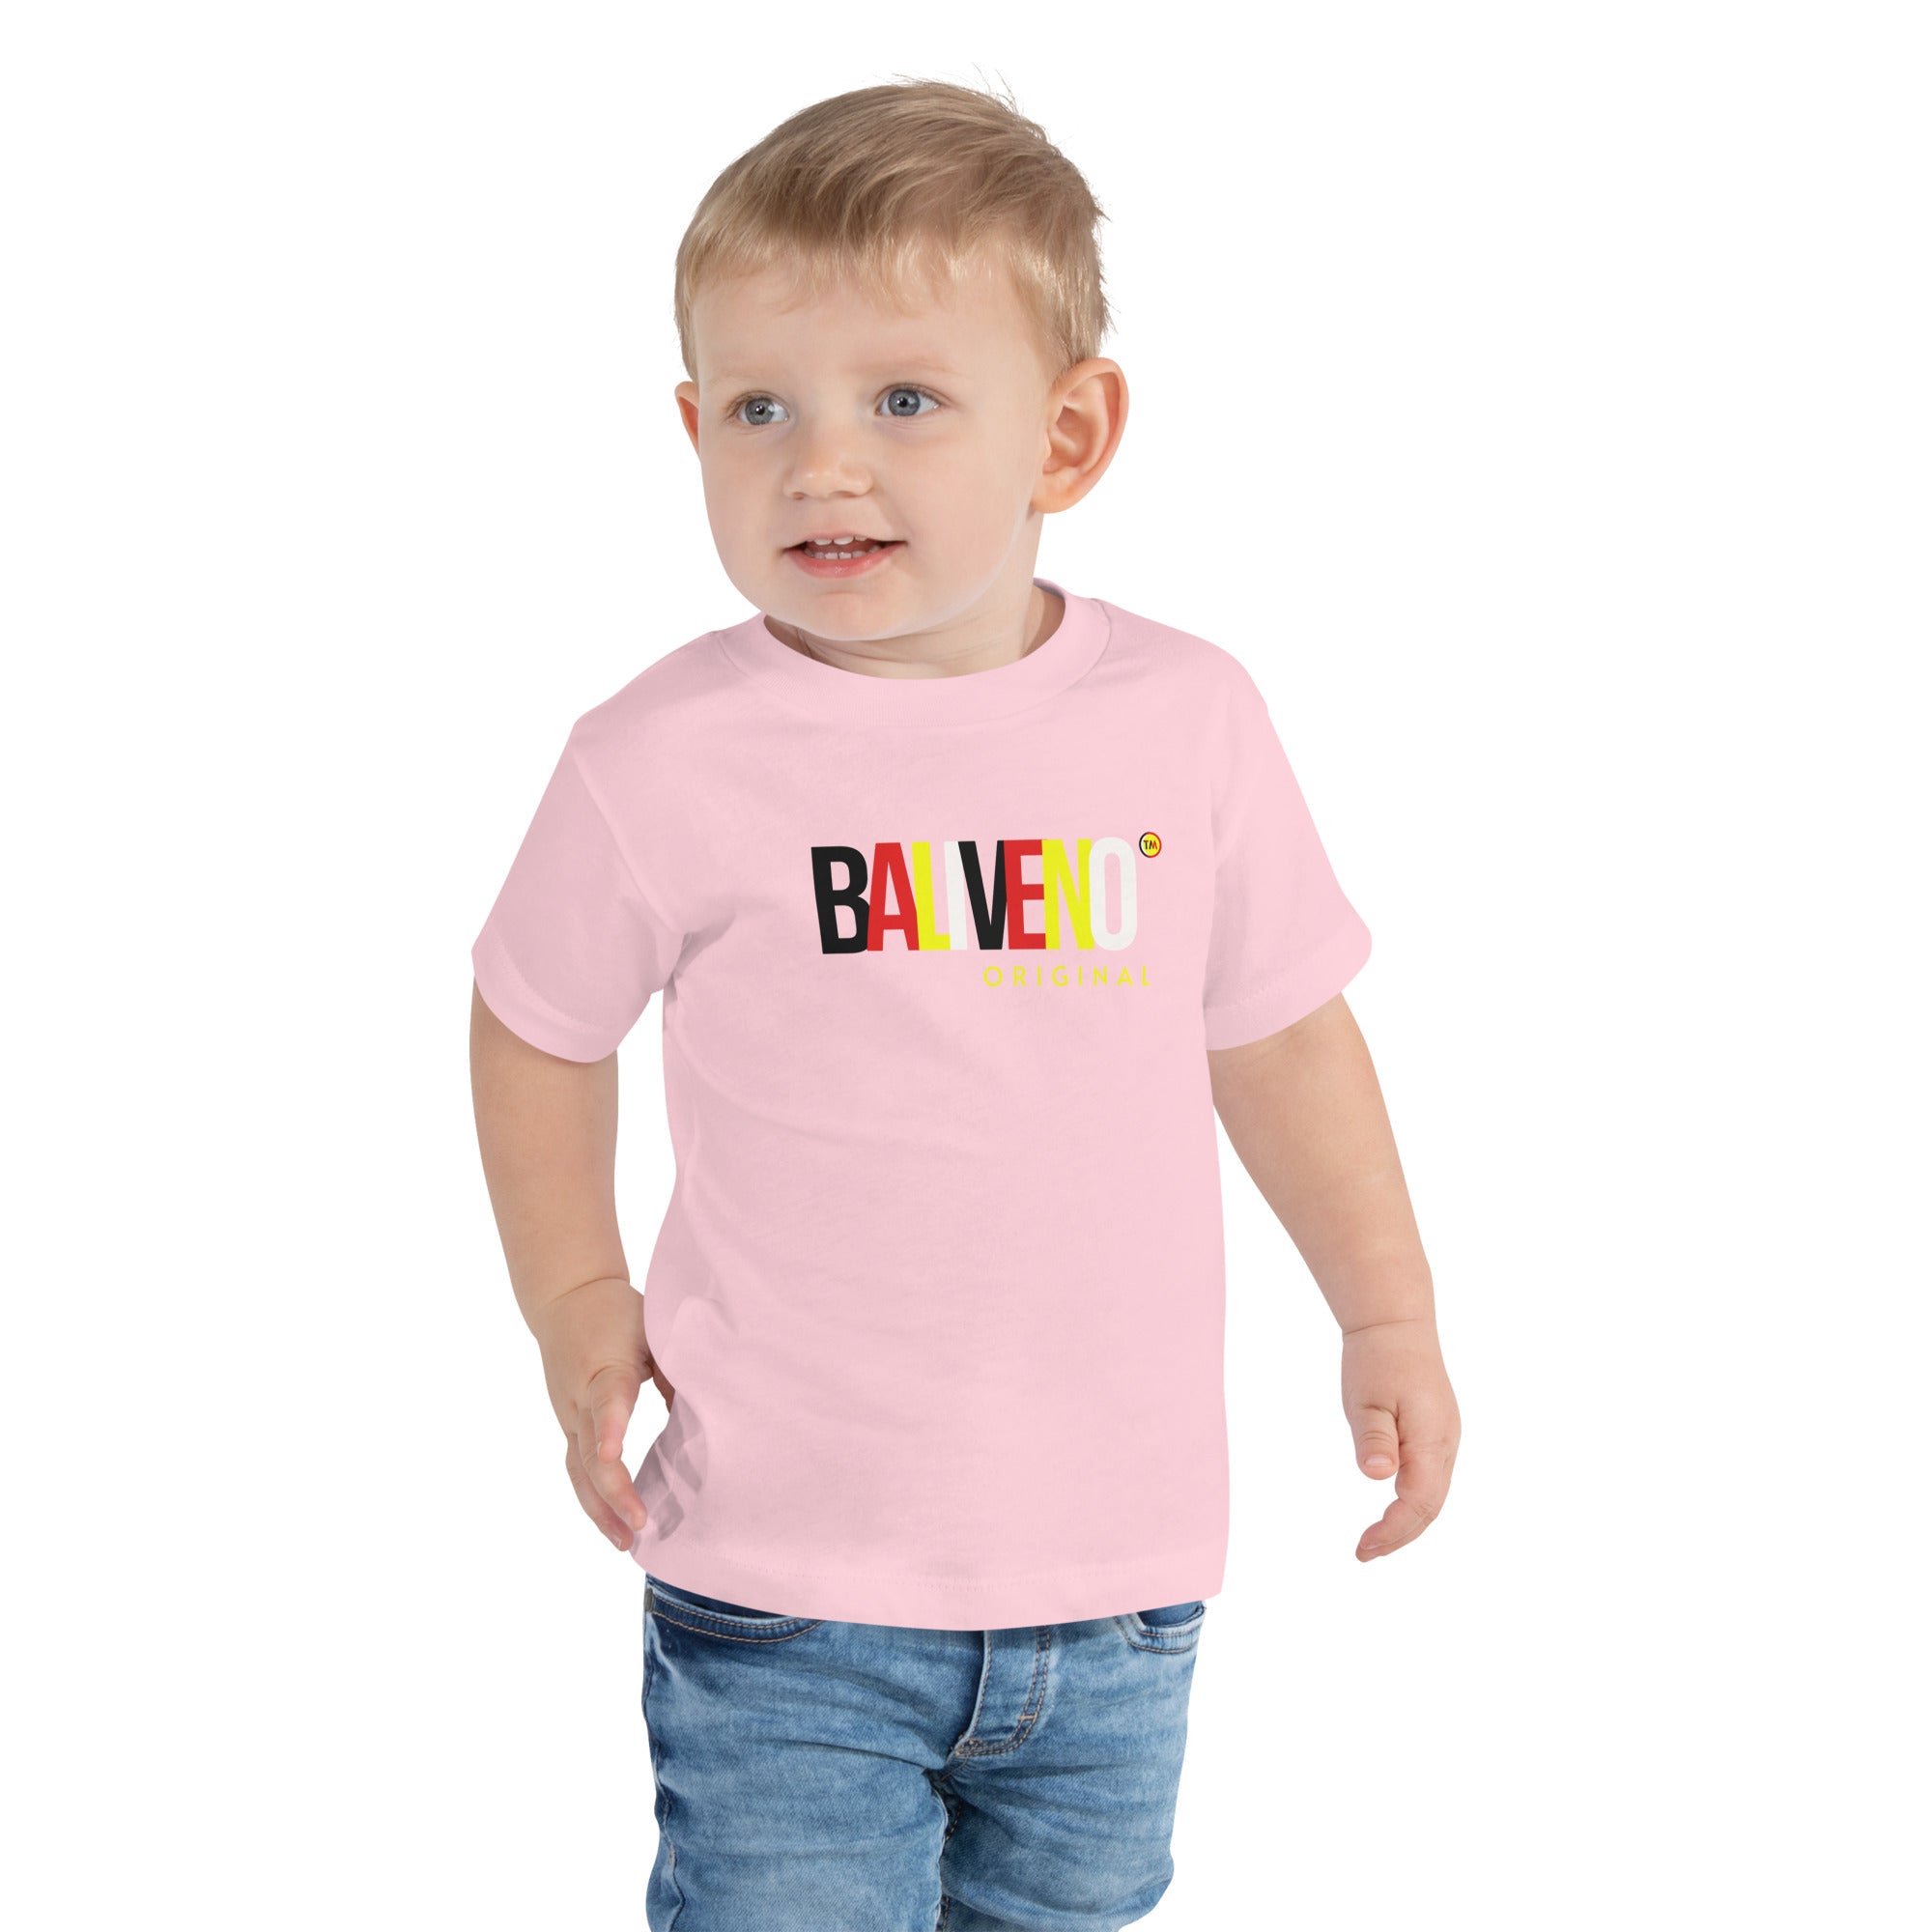 Baliveno Toddler Short Sleeve T-shirt, Printed Toddler T-shirt, Baliveno Fashion, Cotton Tee, Kids Tee,